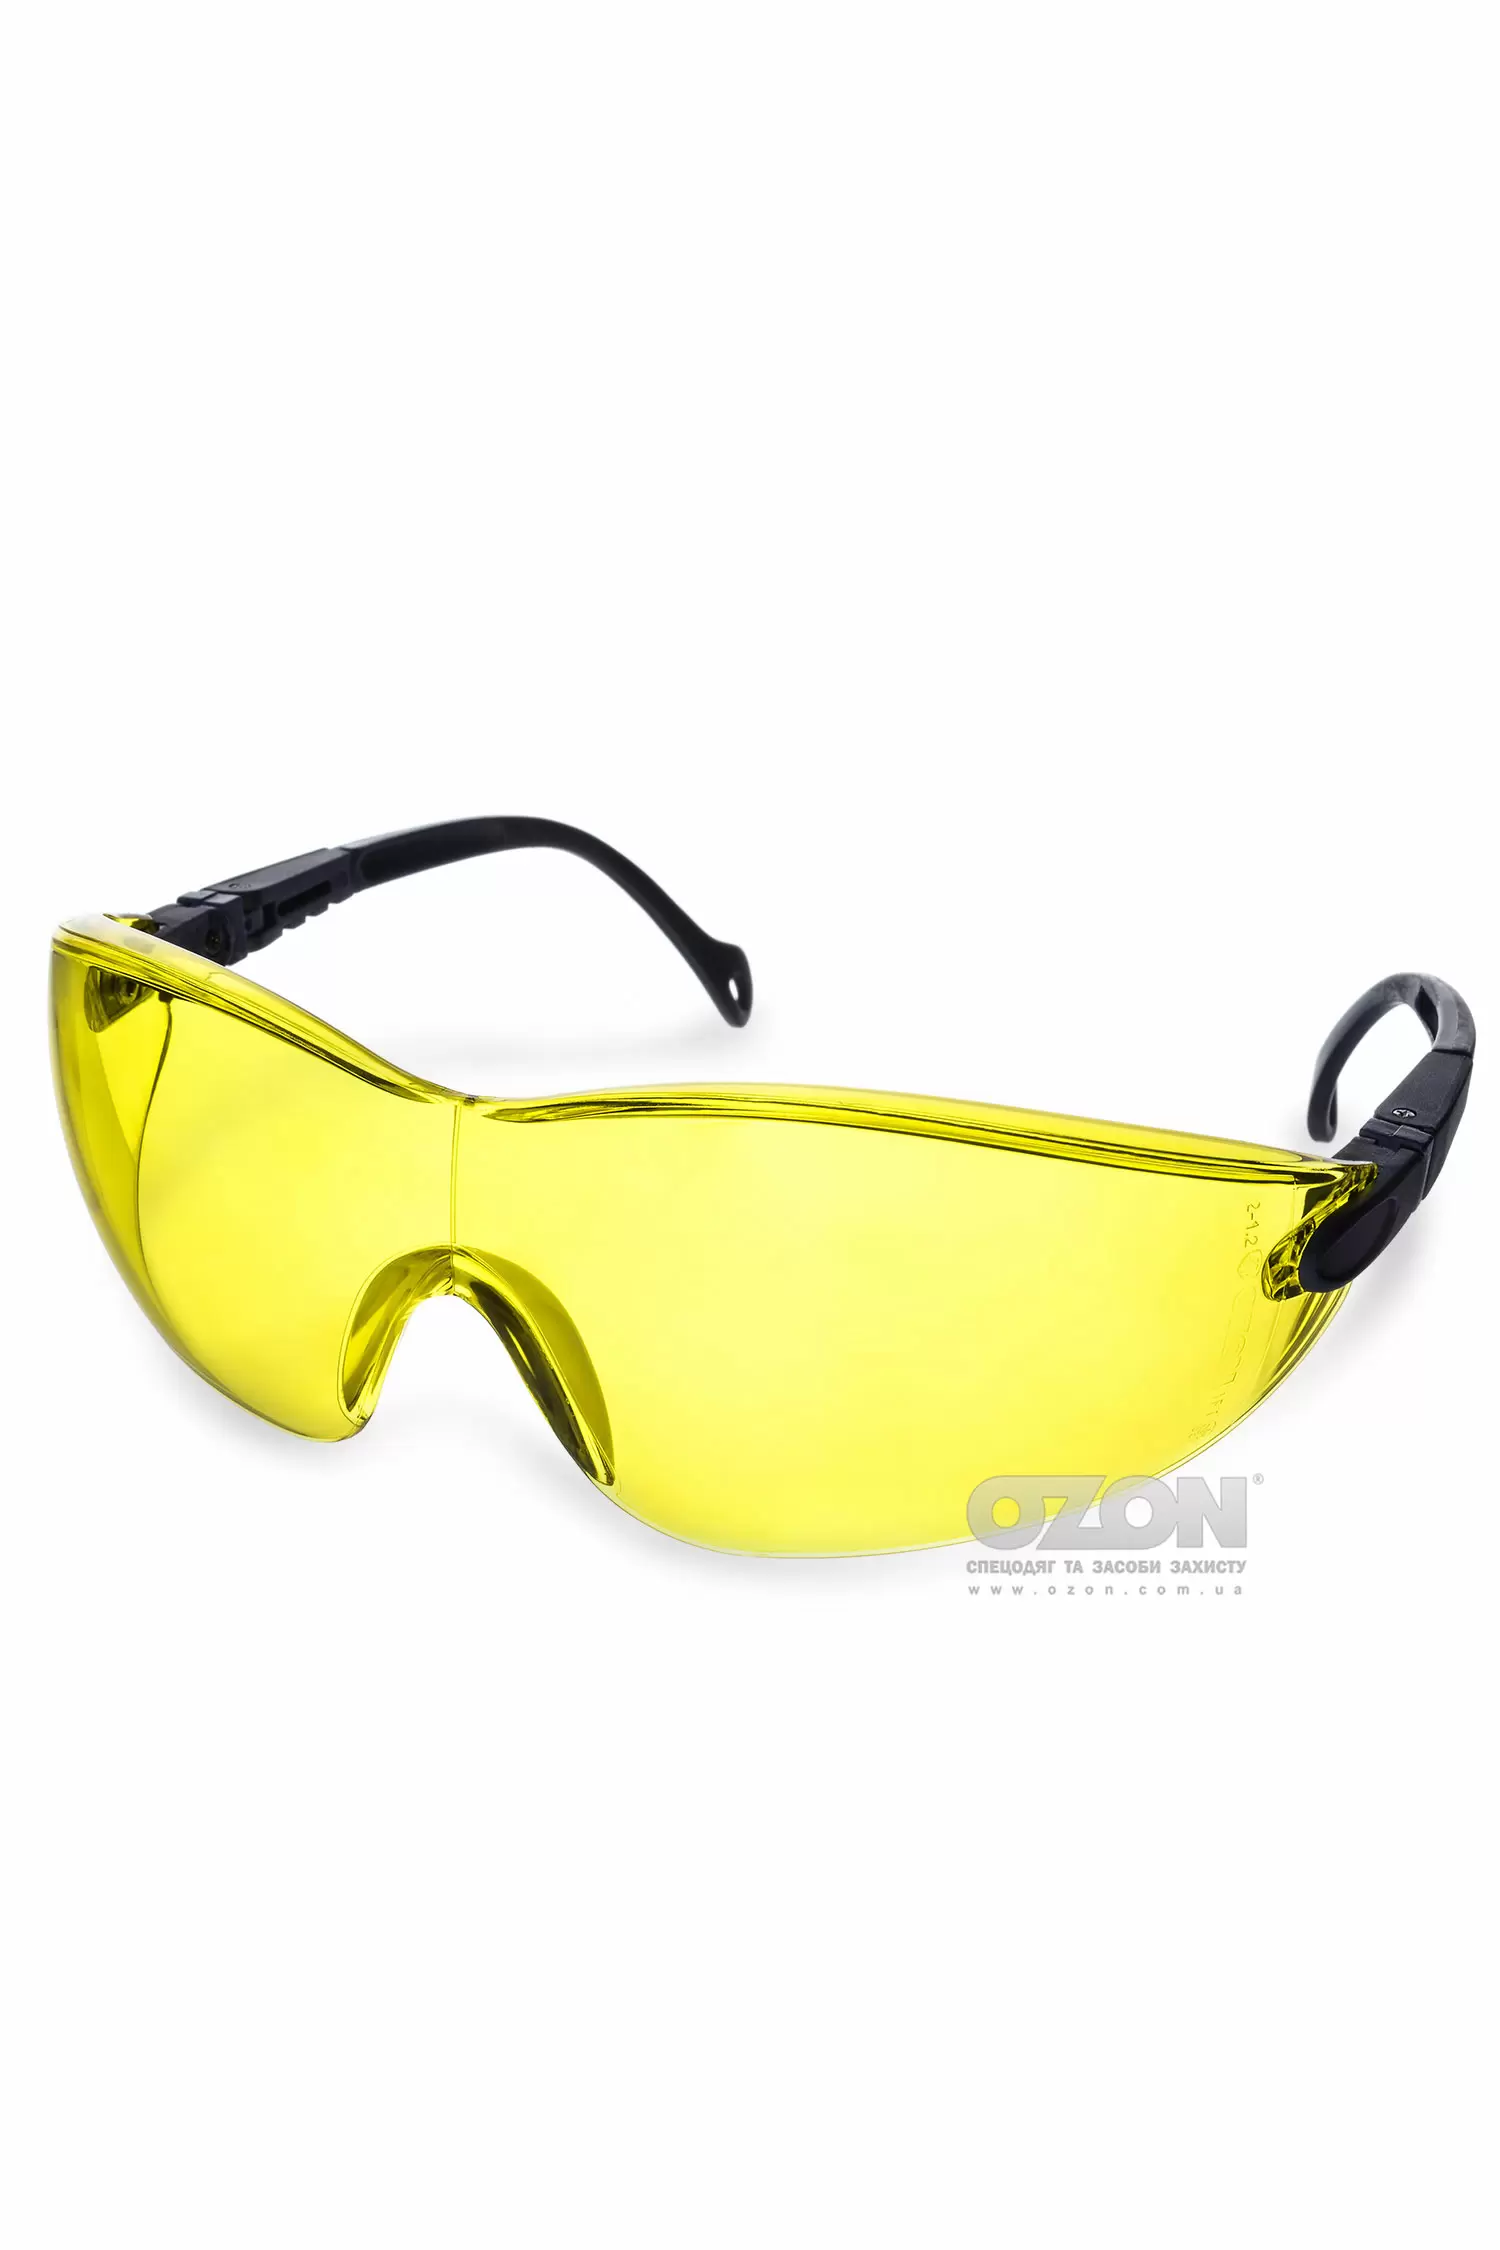 Защитные очки OZON™ 7-051 KN, желтые - Фото 1